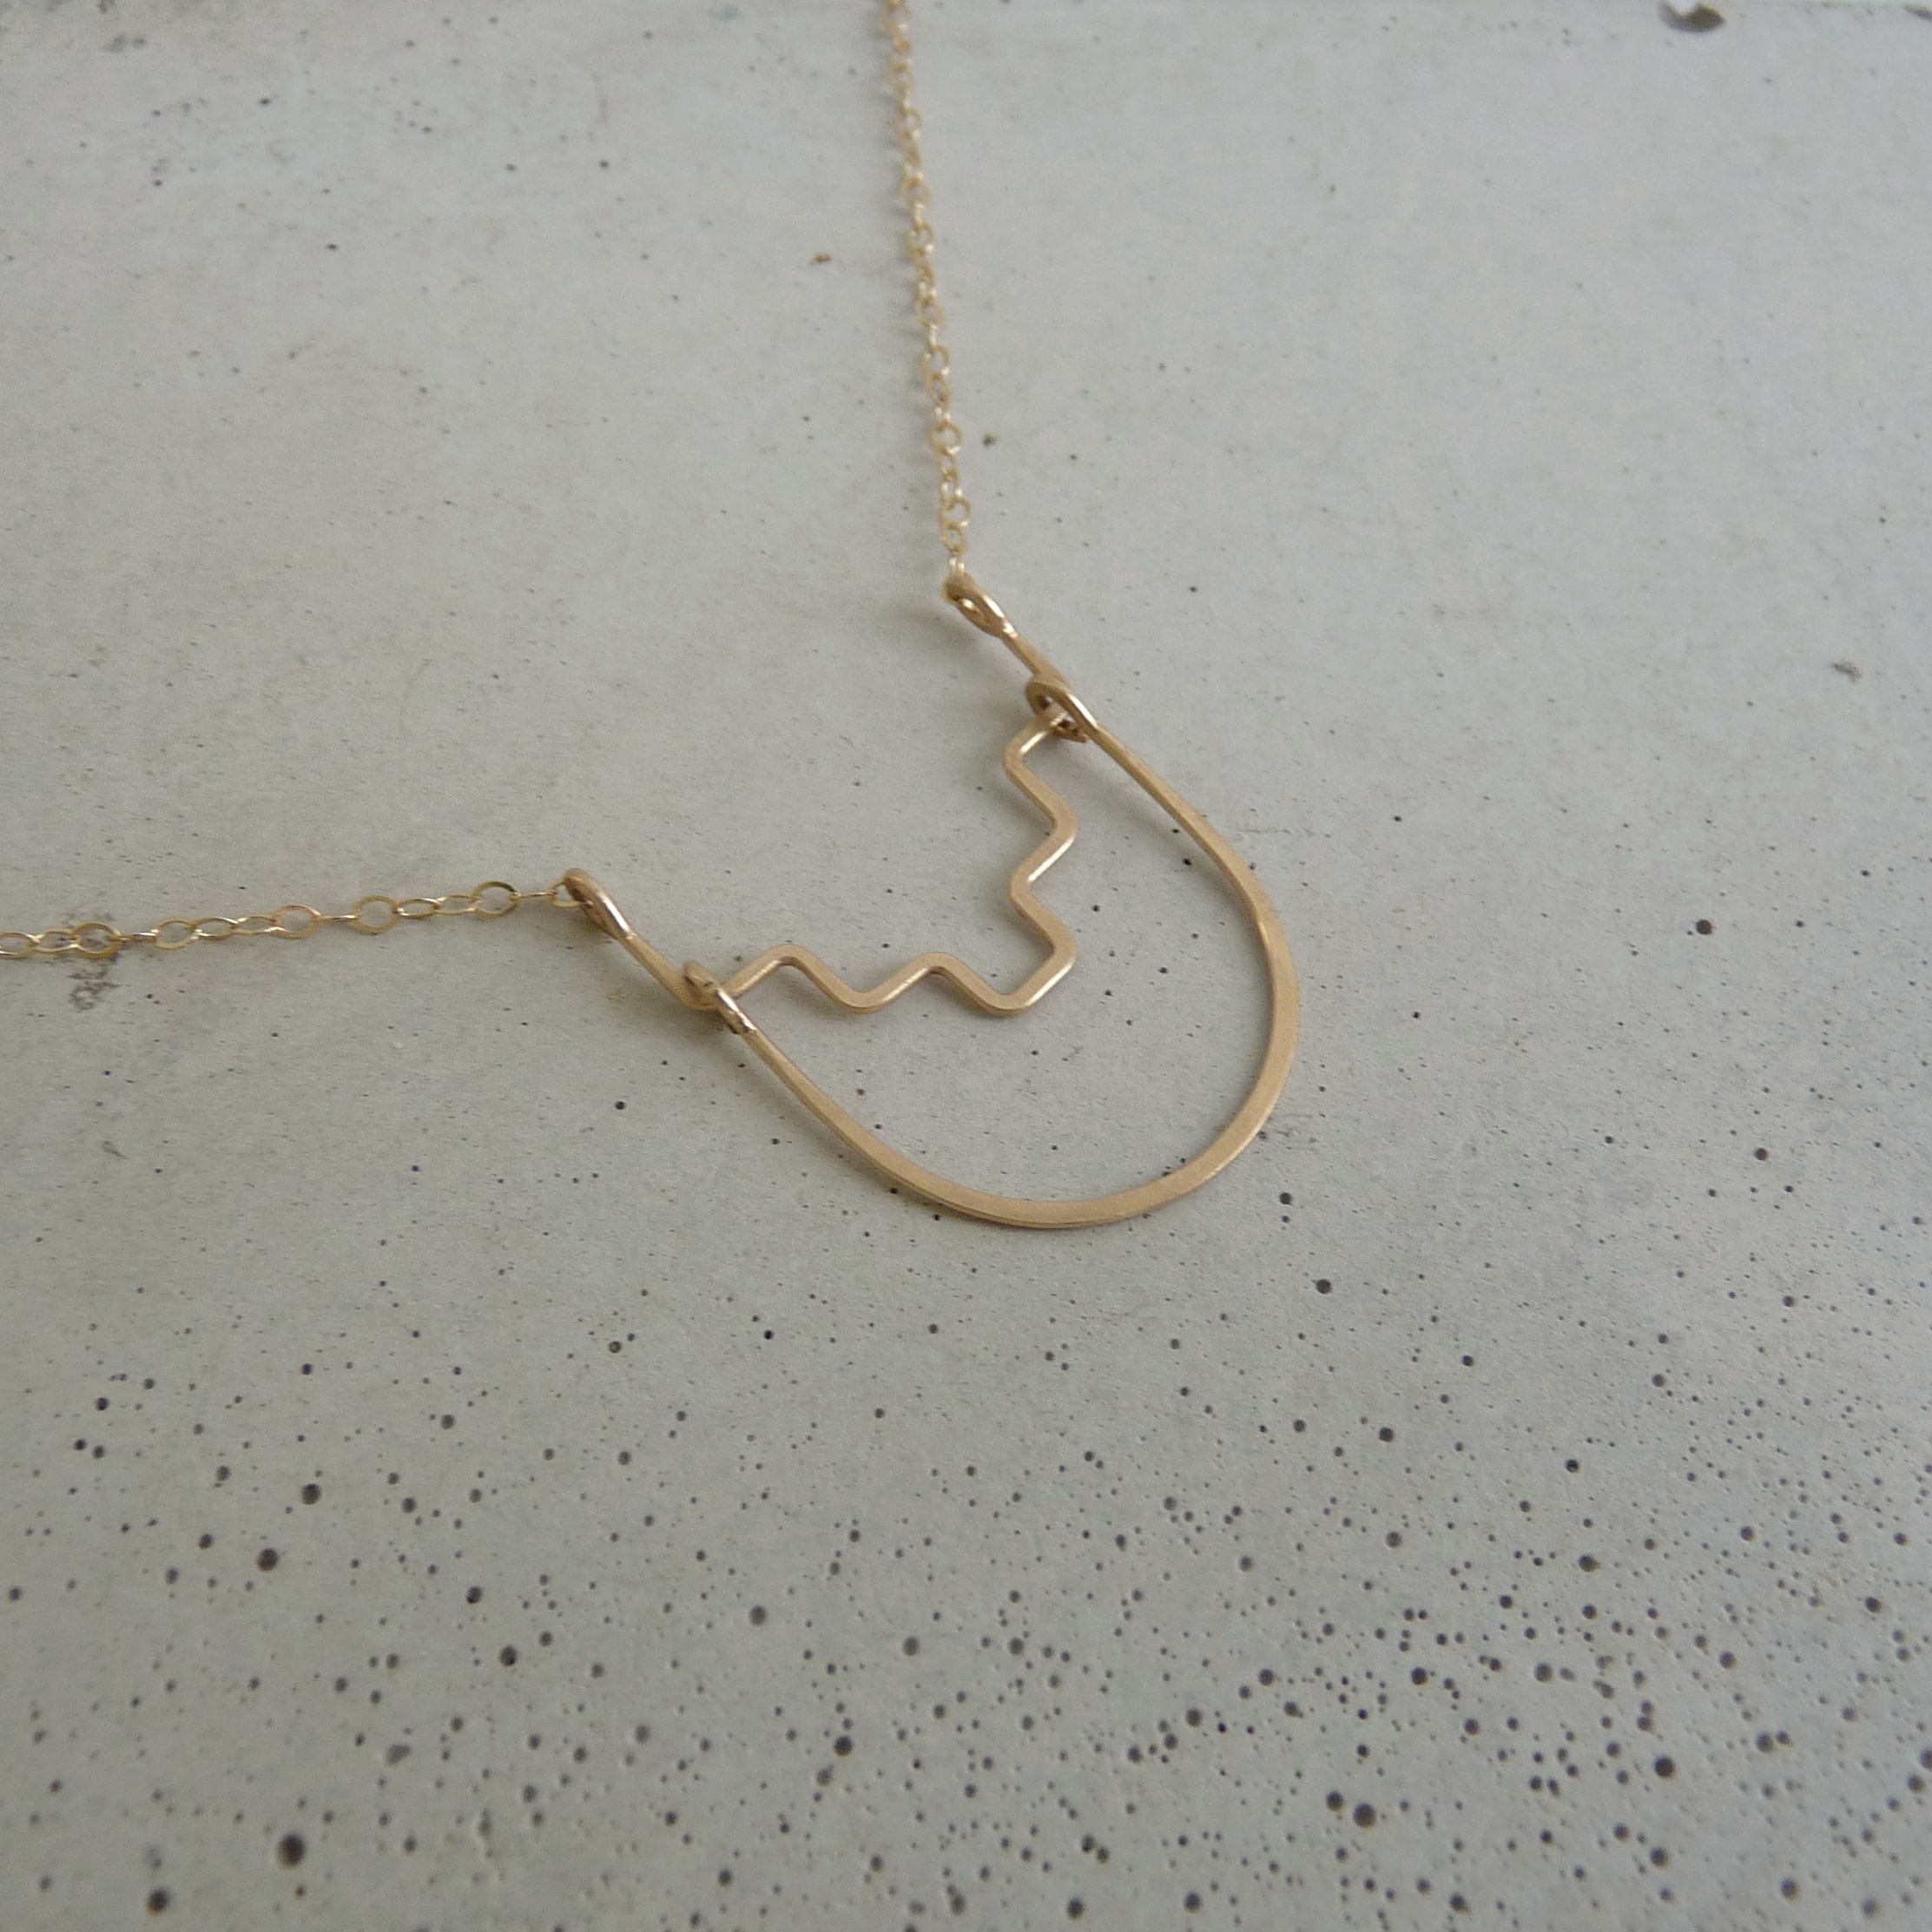 DESCEND necklace, gold aztec necklace, delicate gold necklace, delicate geometric necklace, new refined basics